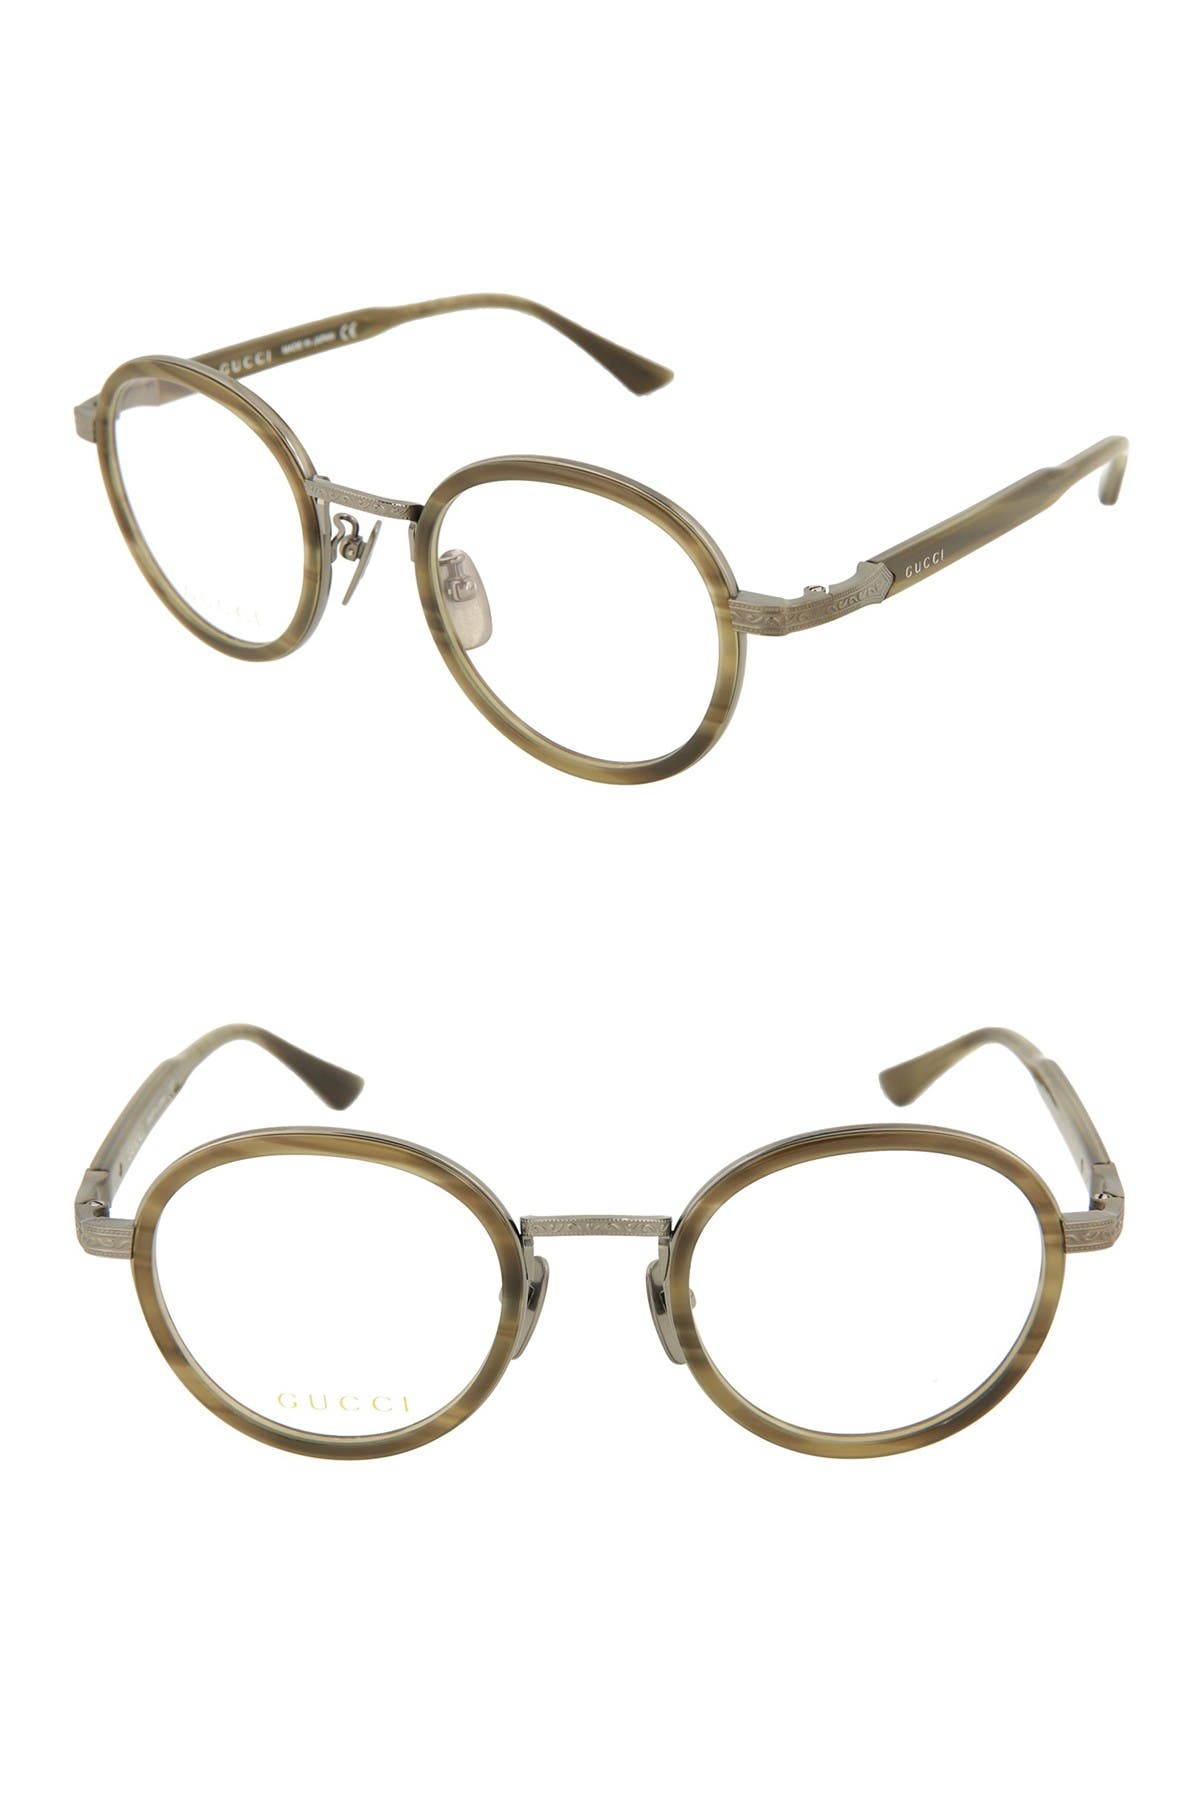 gucci optical glasses